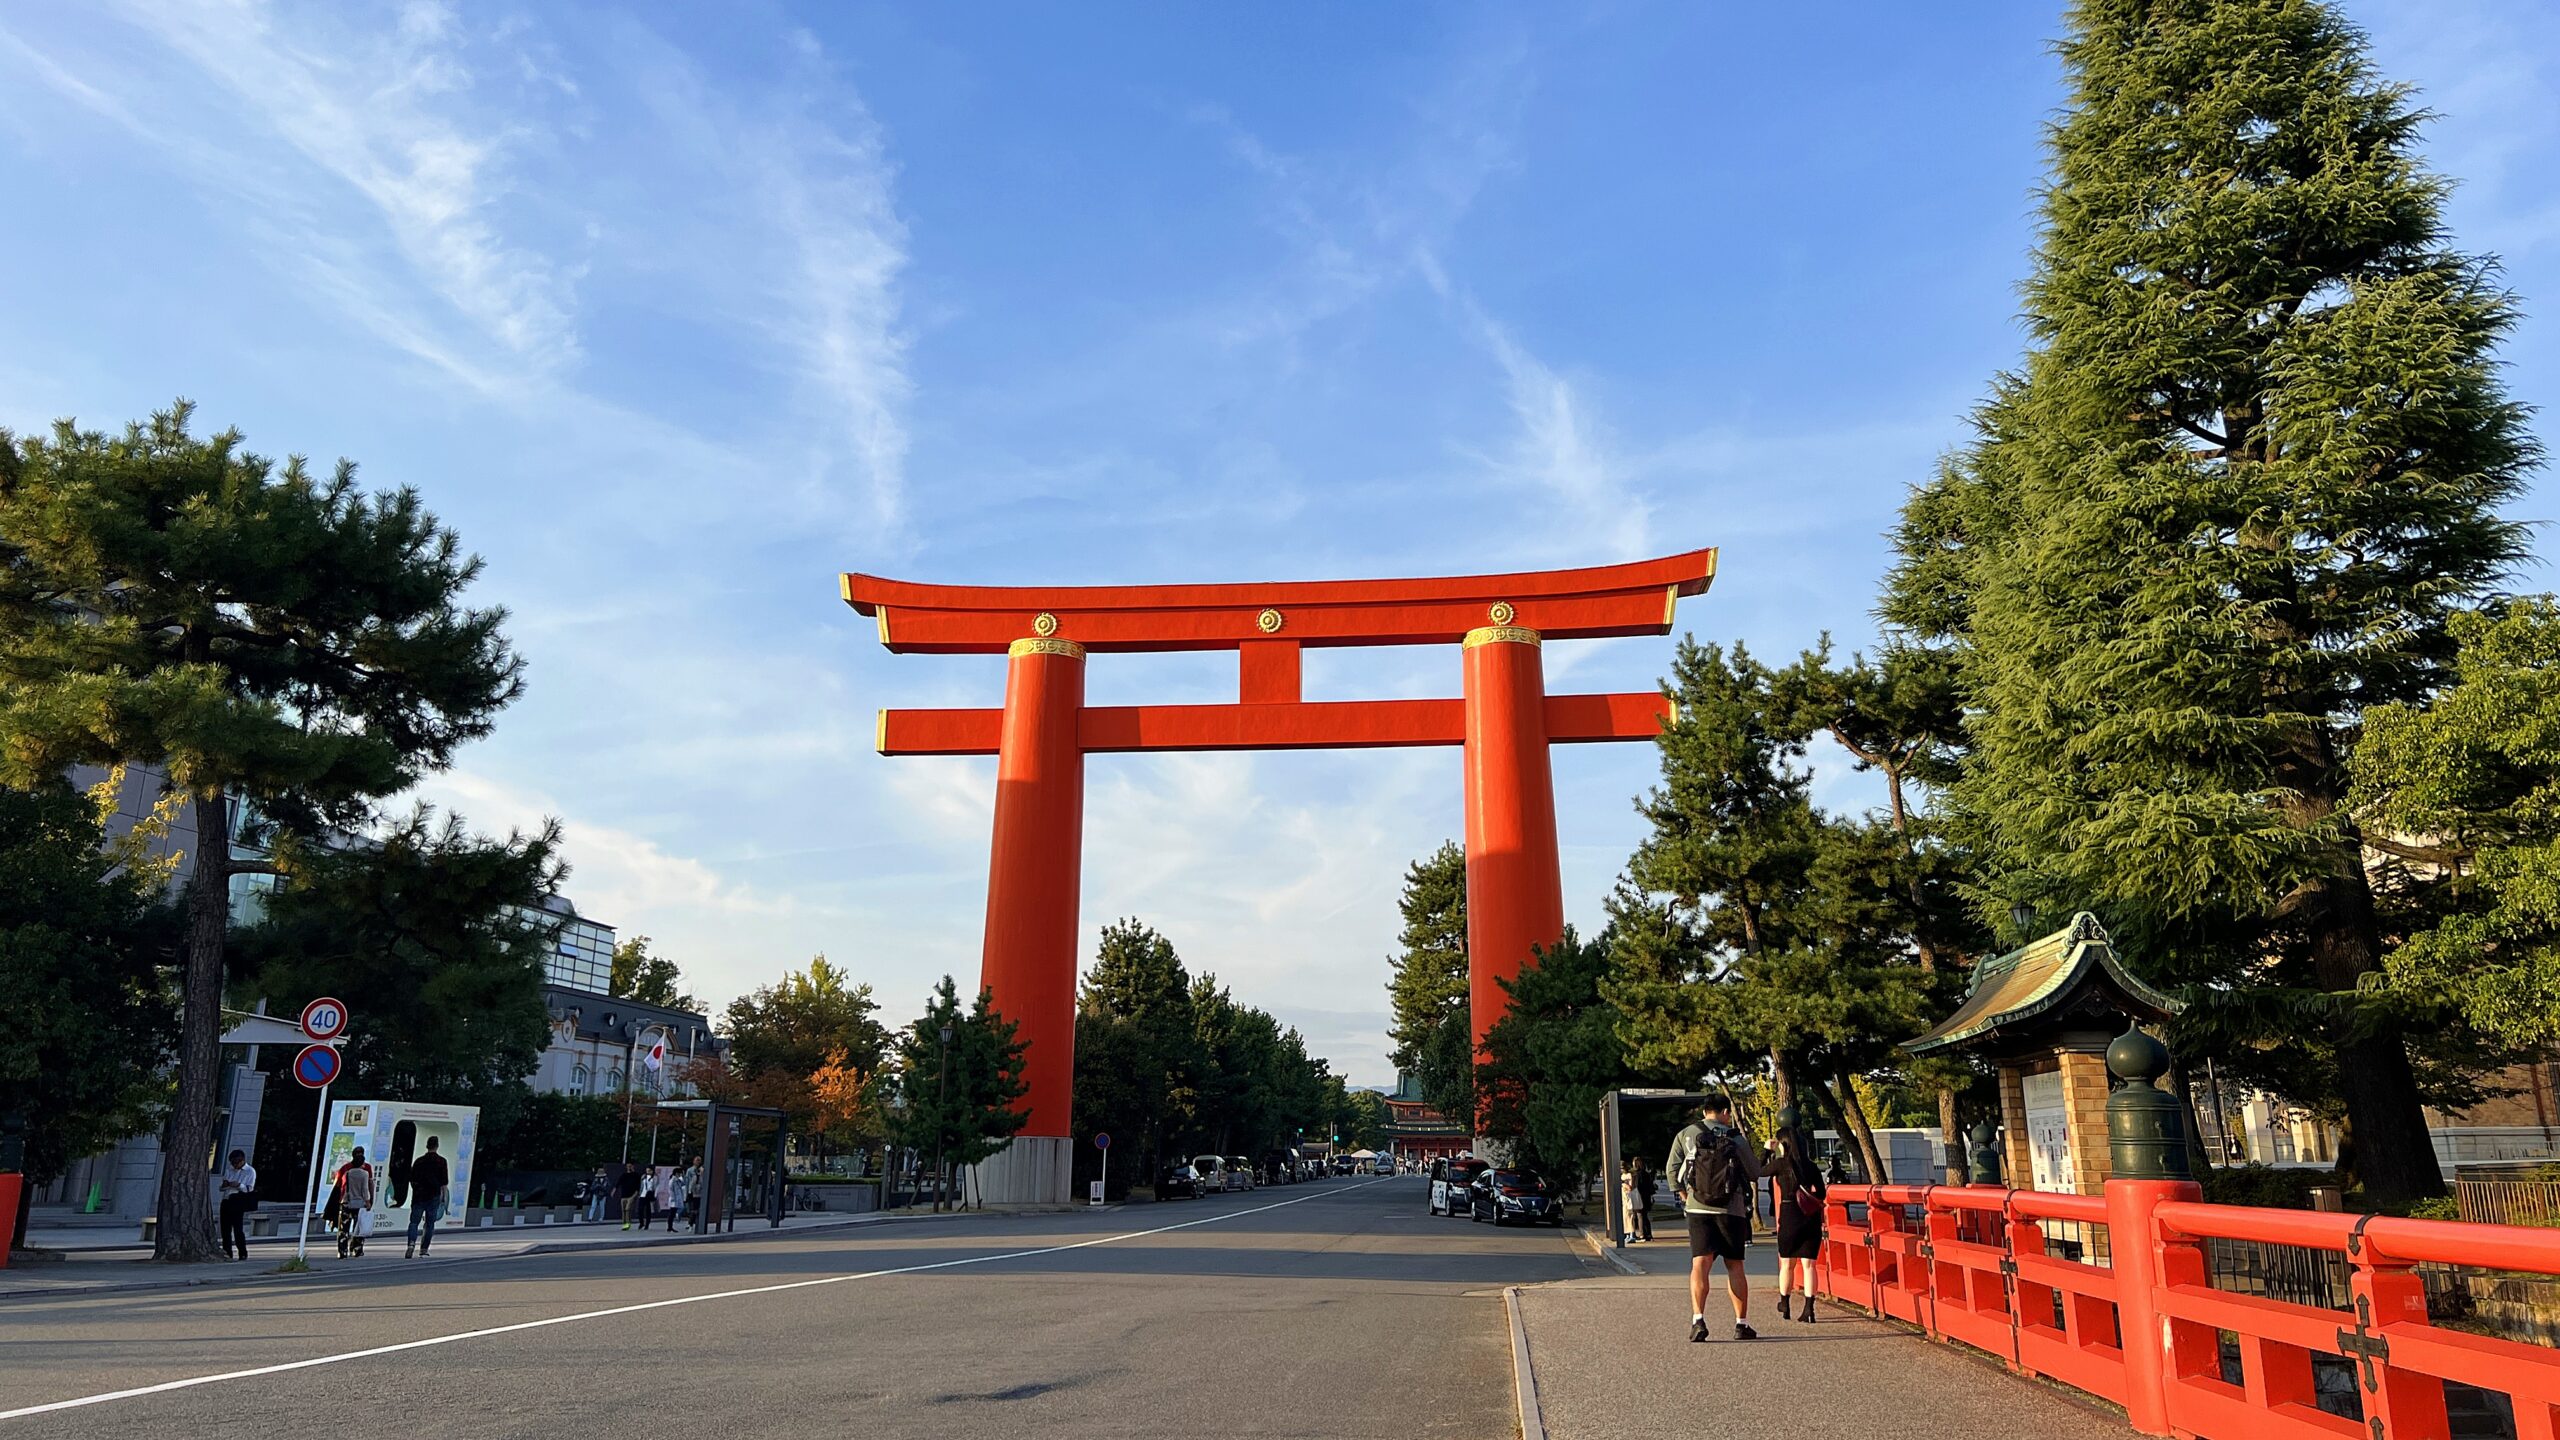 日本京都7日20座經典寺院朝聖與參拜！細訴7日徒步搭配大眾運輸交通工具的自助旅行攻略，另外還有美食食事處與周邊順遊行程推薦！ @。CJ夫人。